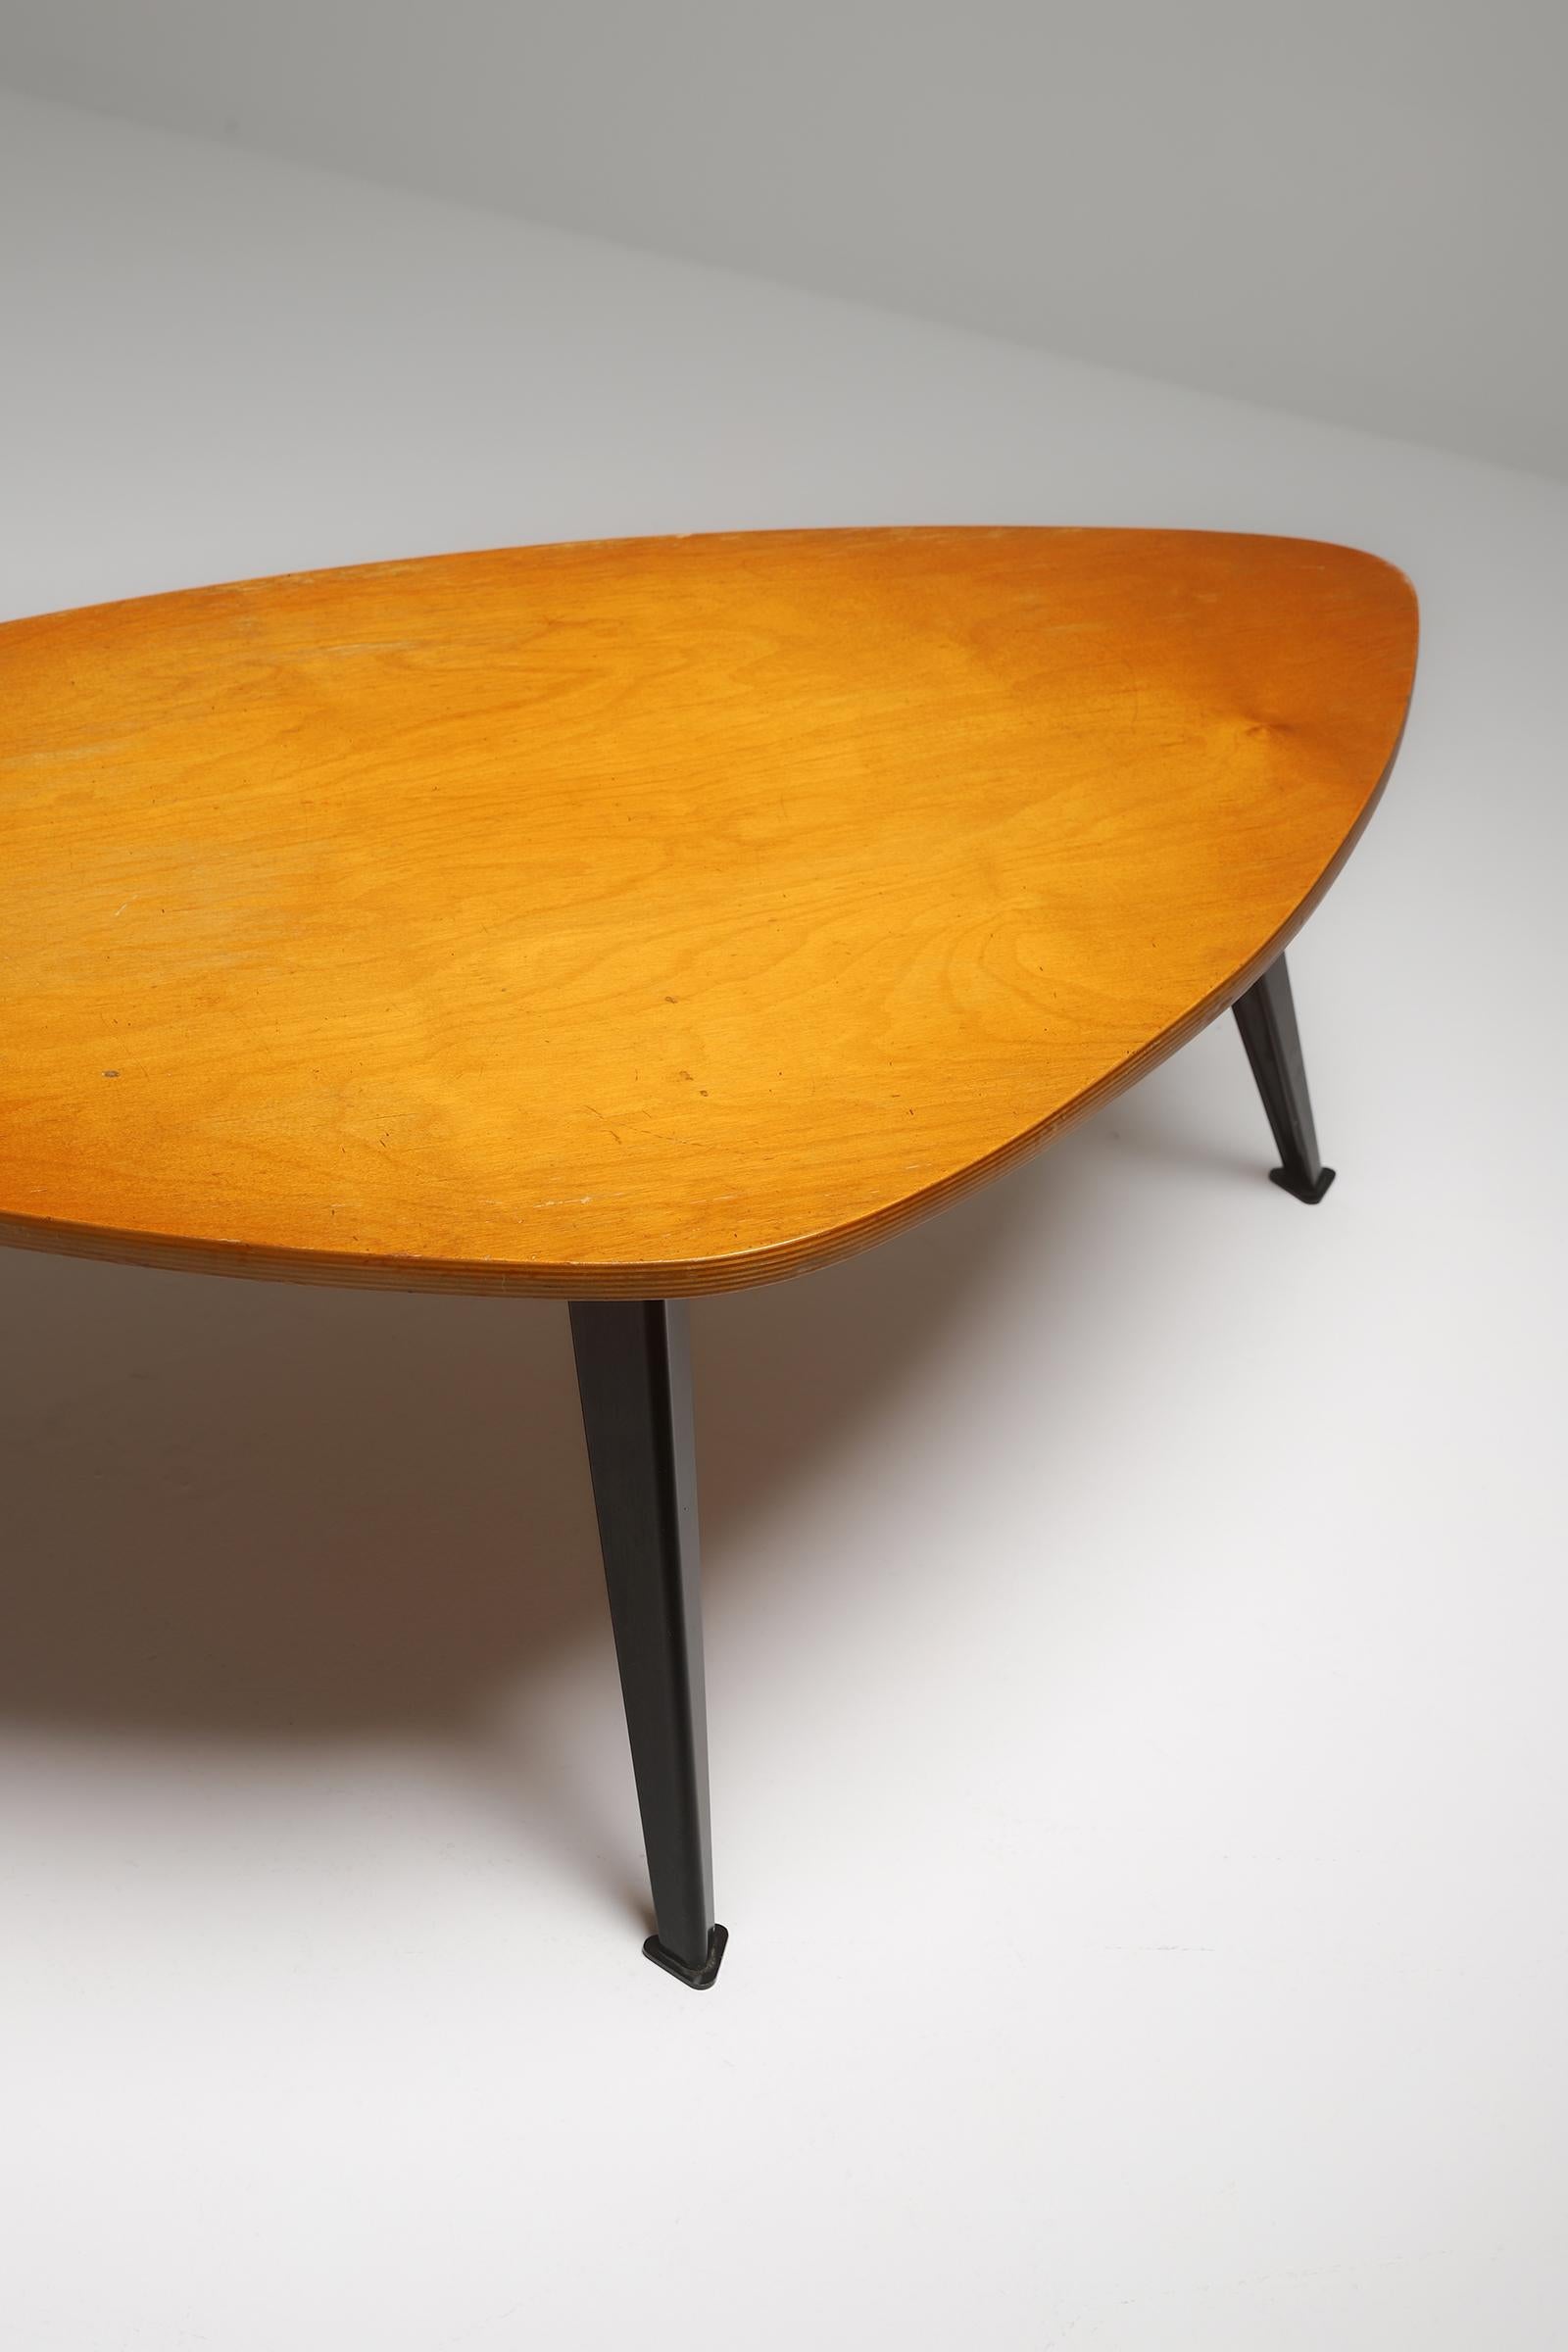 Mid-century modern wooden Coffee Table by Willy Van Der Meeren 1950s 1